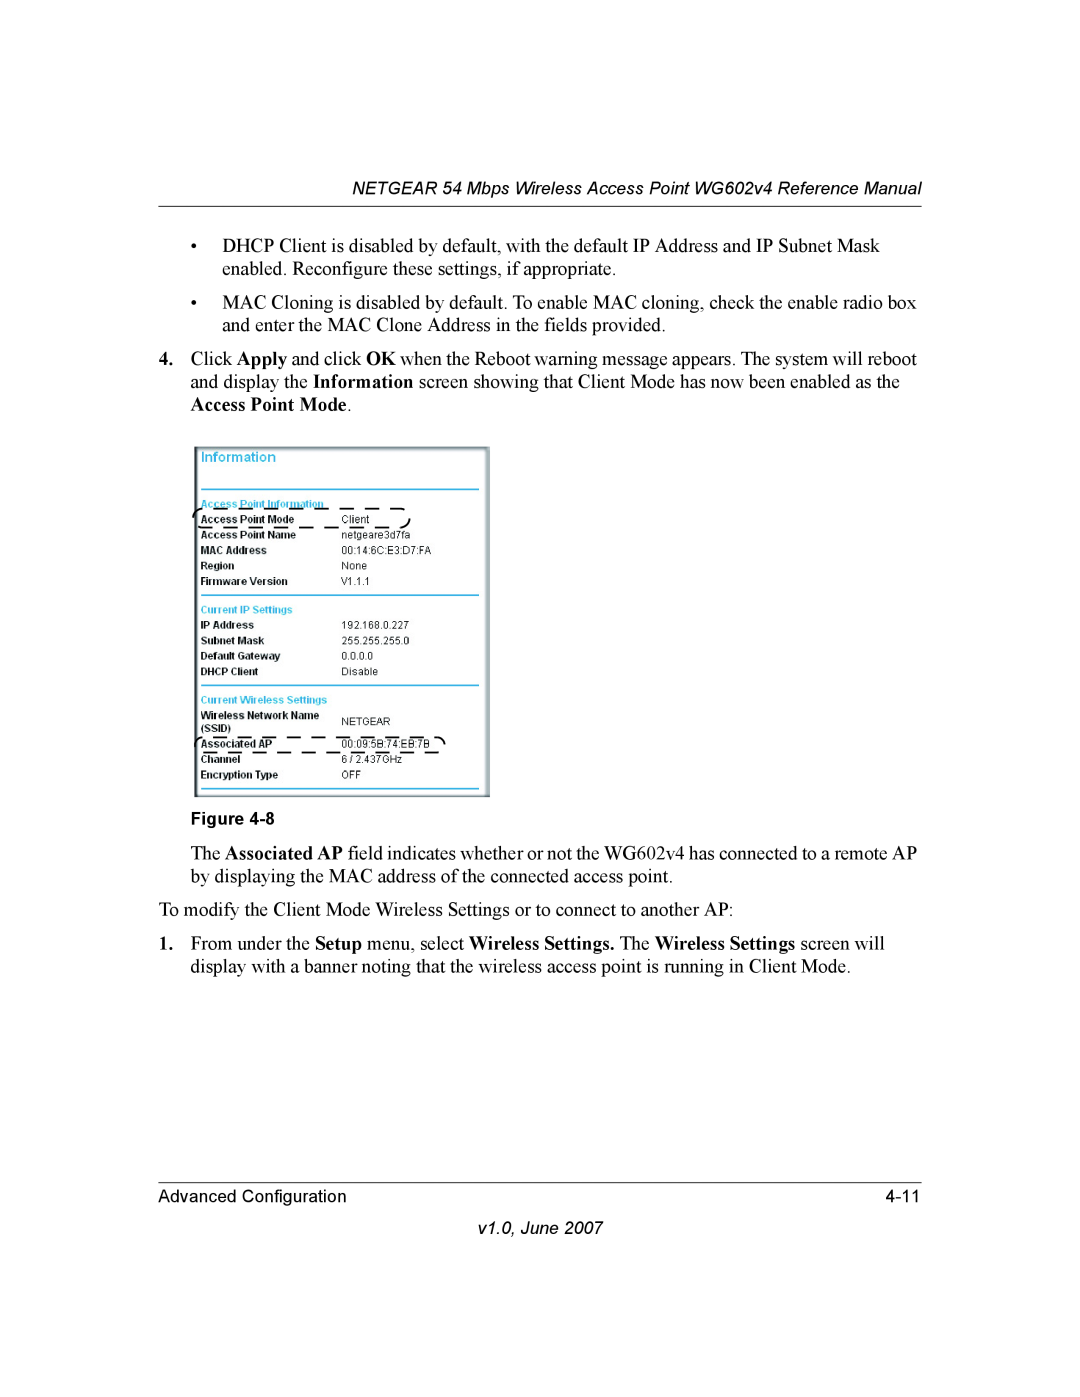 NETGEAR WG602V4 manual 